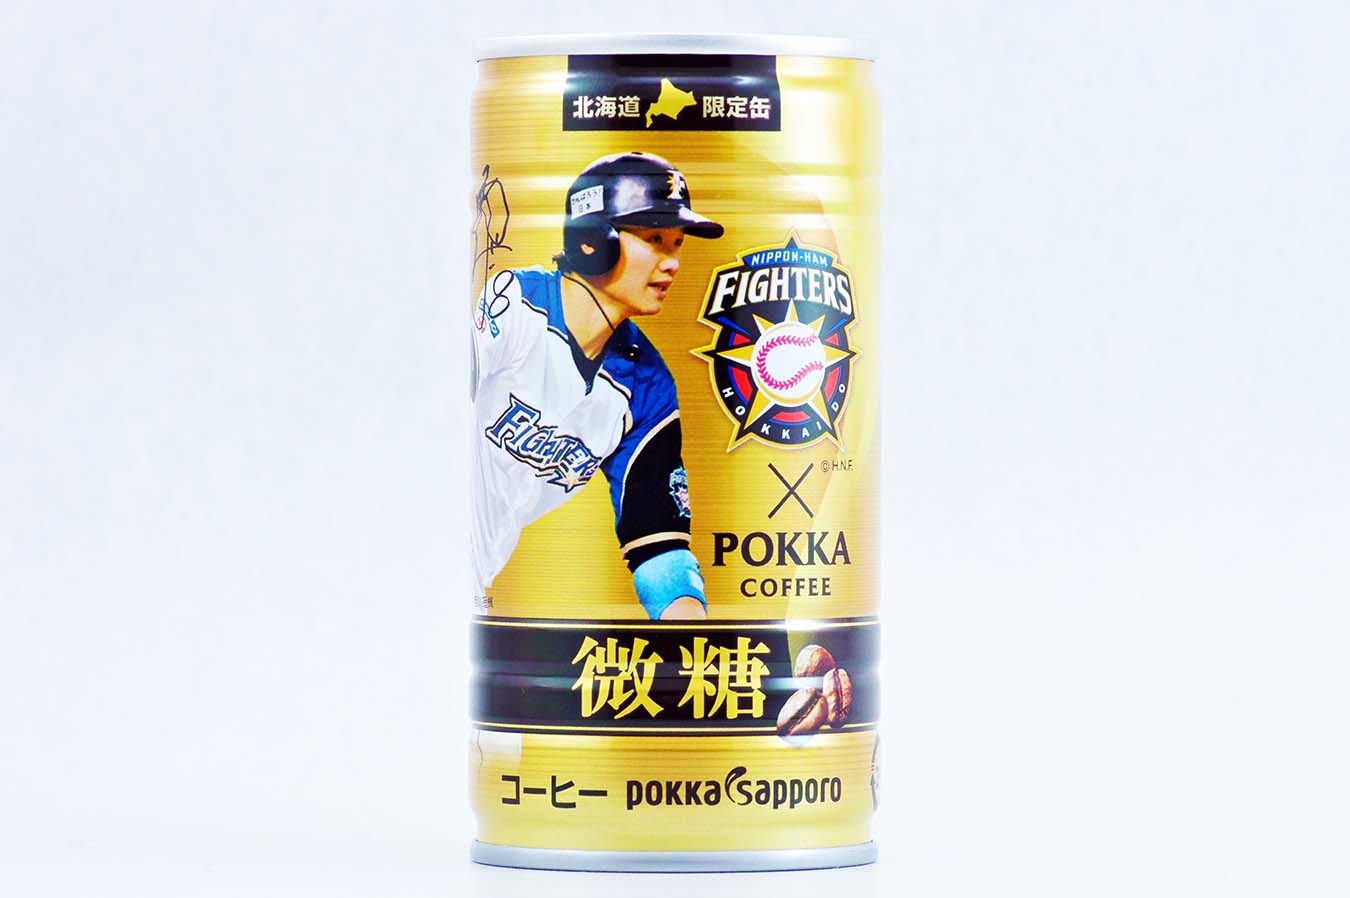 ポッカコーヒー ファイターズ選手缶微糖 西川遥輝 2015年6月